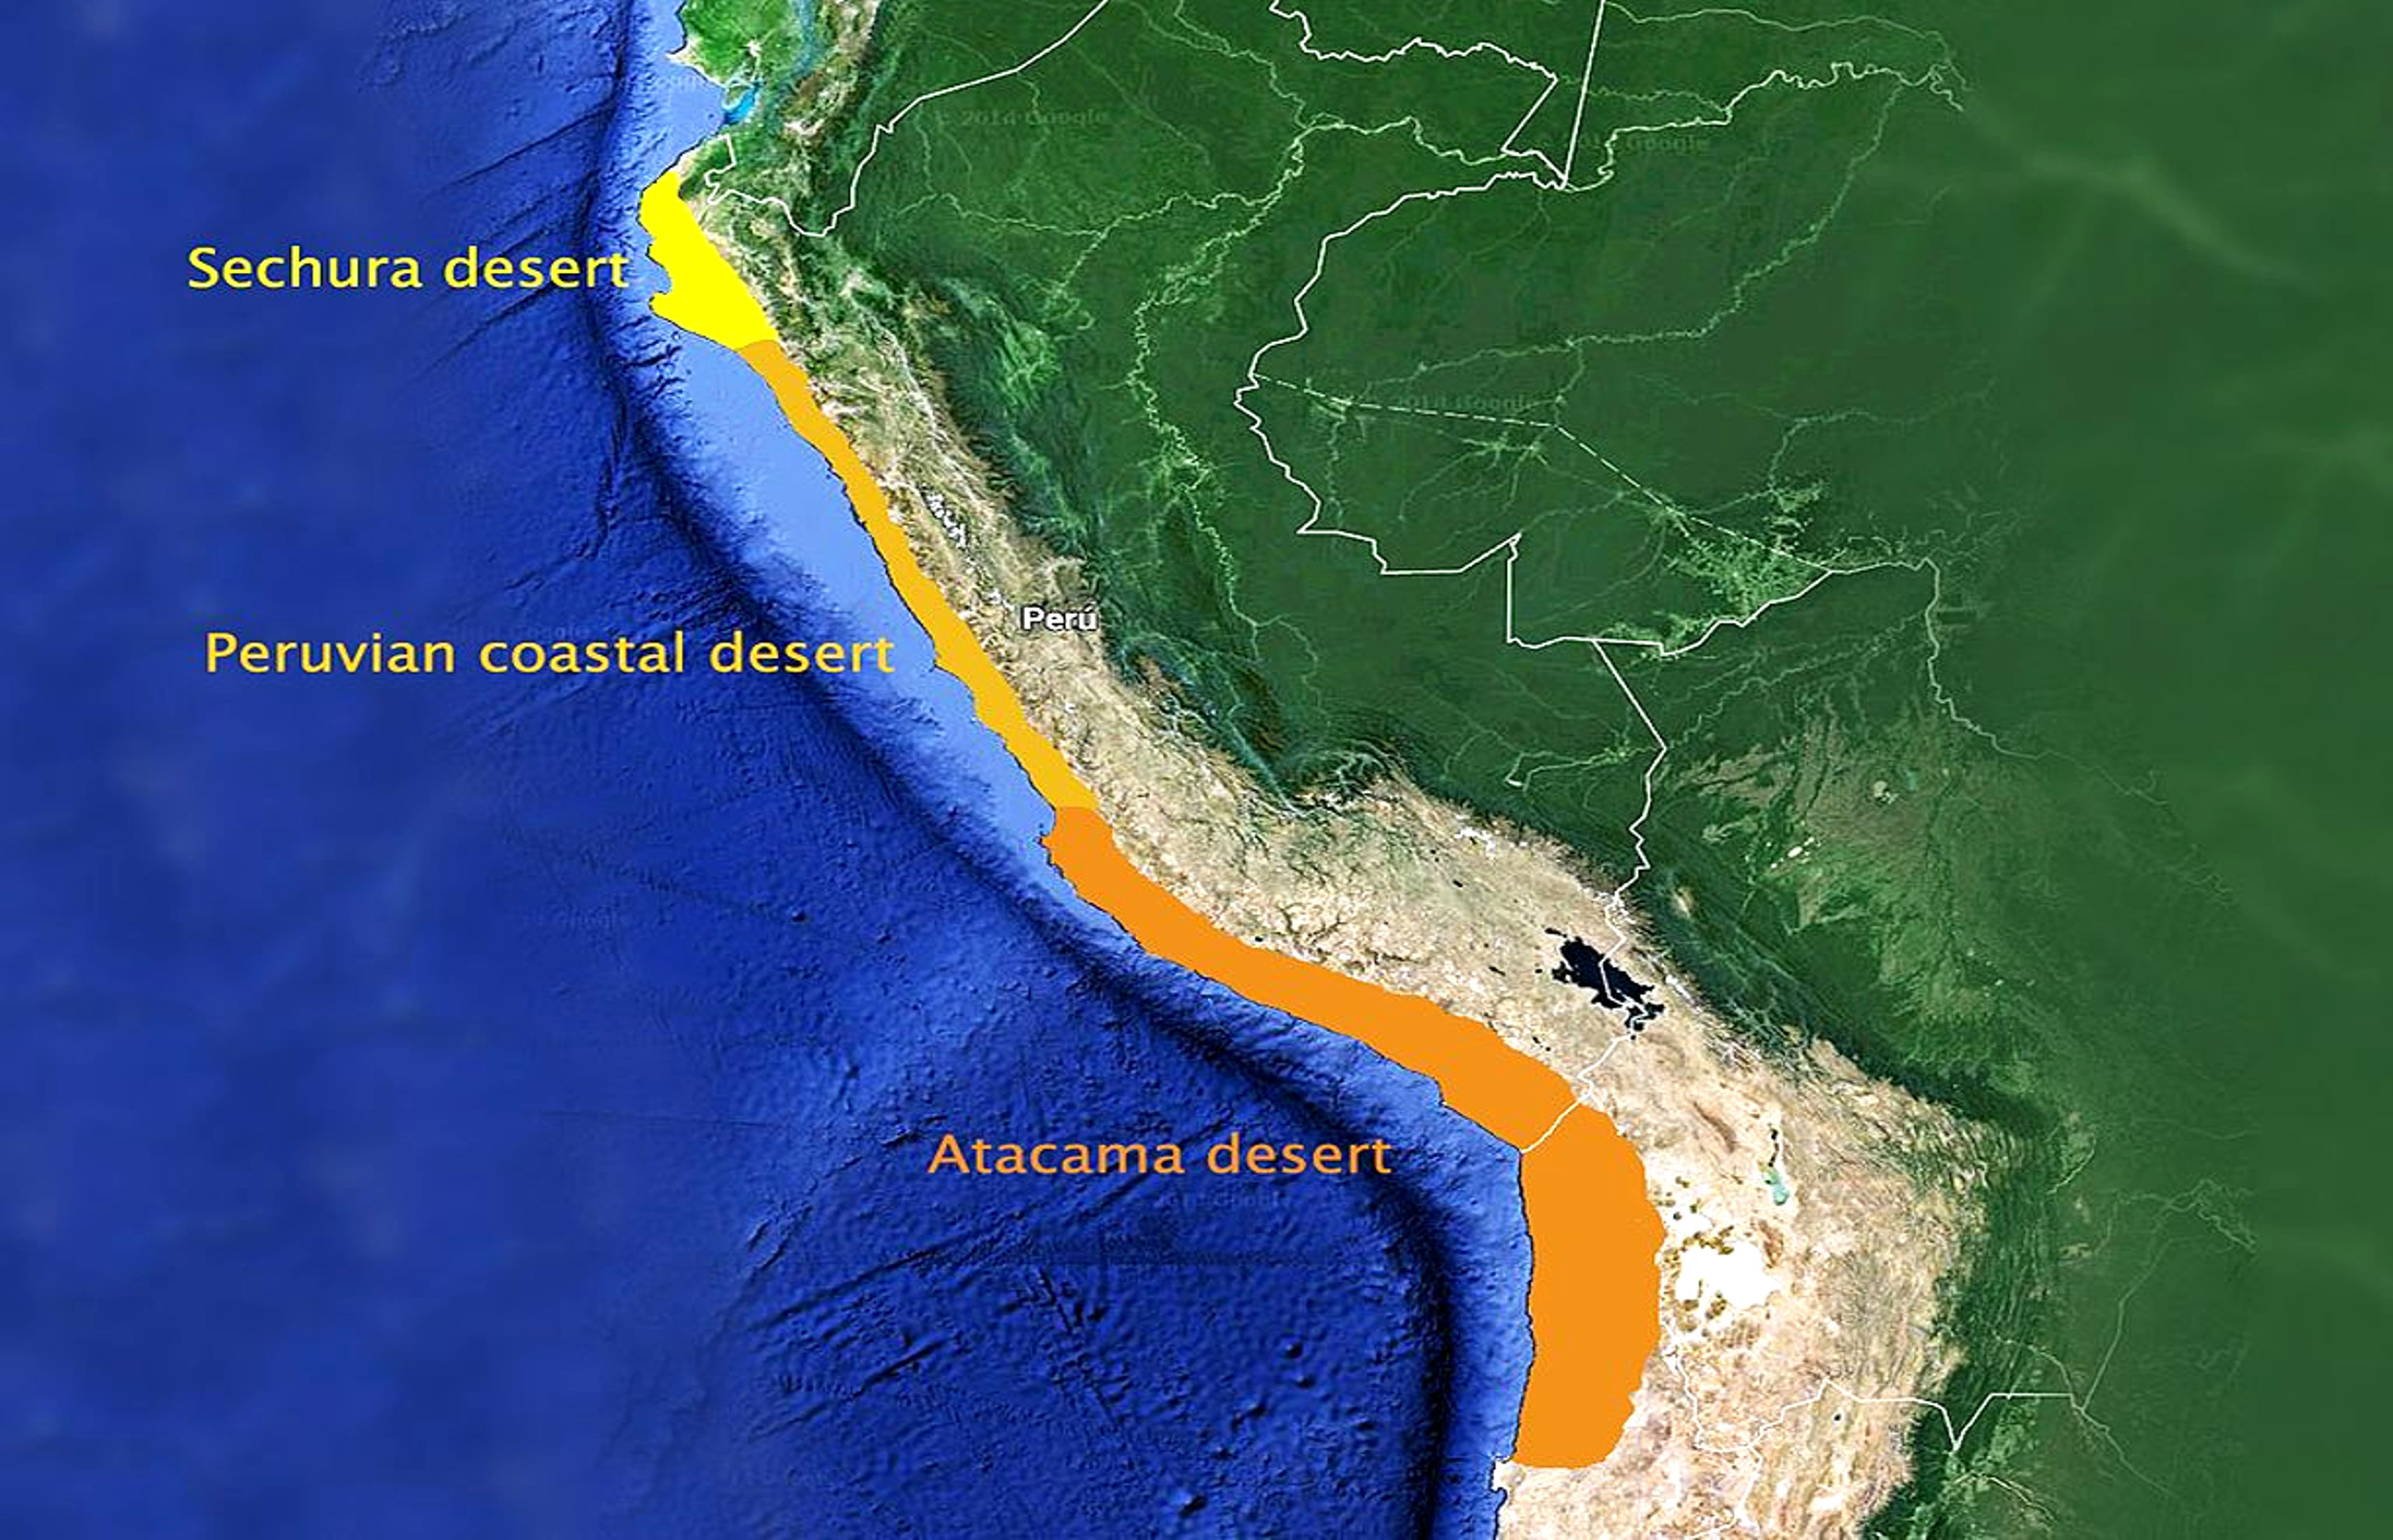 Coastal Deserts in South America